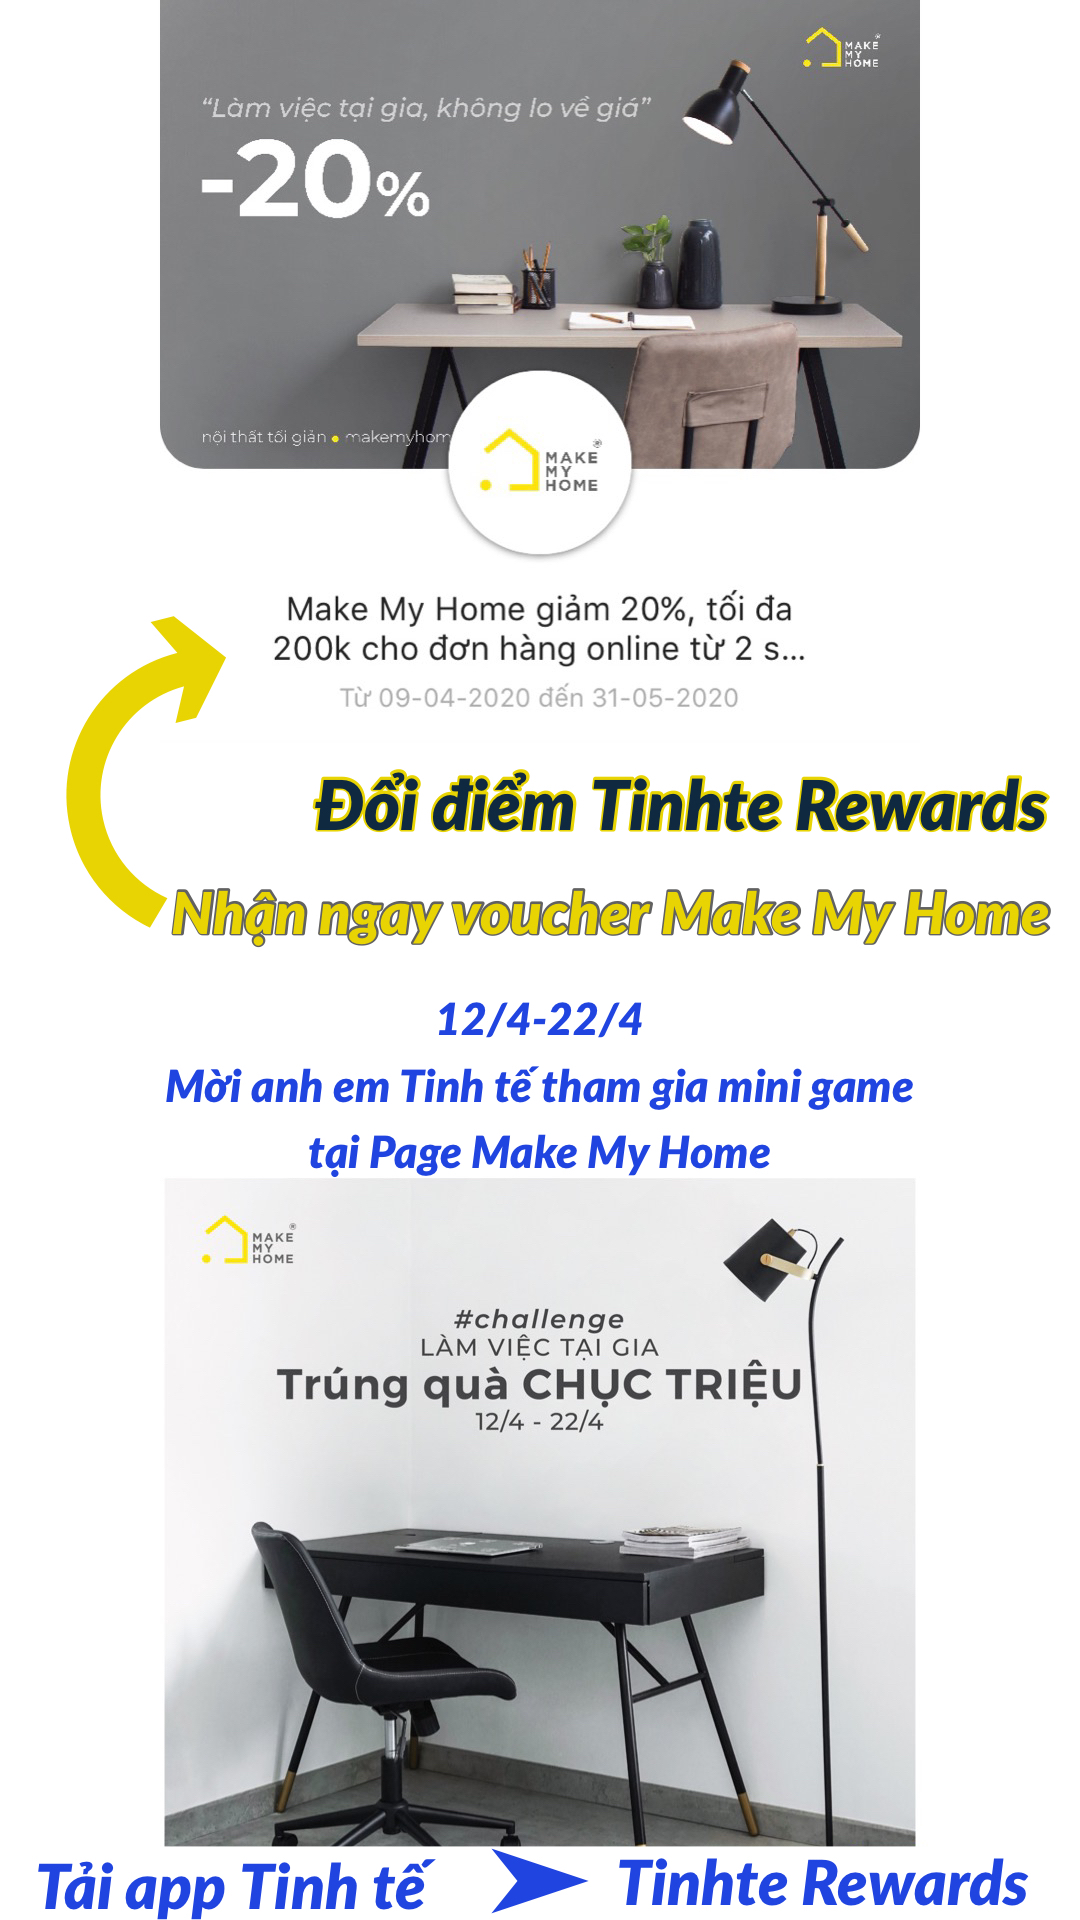 My Home - Công ty TNHH thiết bị và công nghệ MY HOME Việt Nam